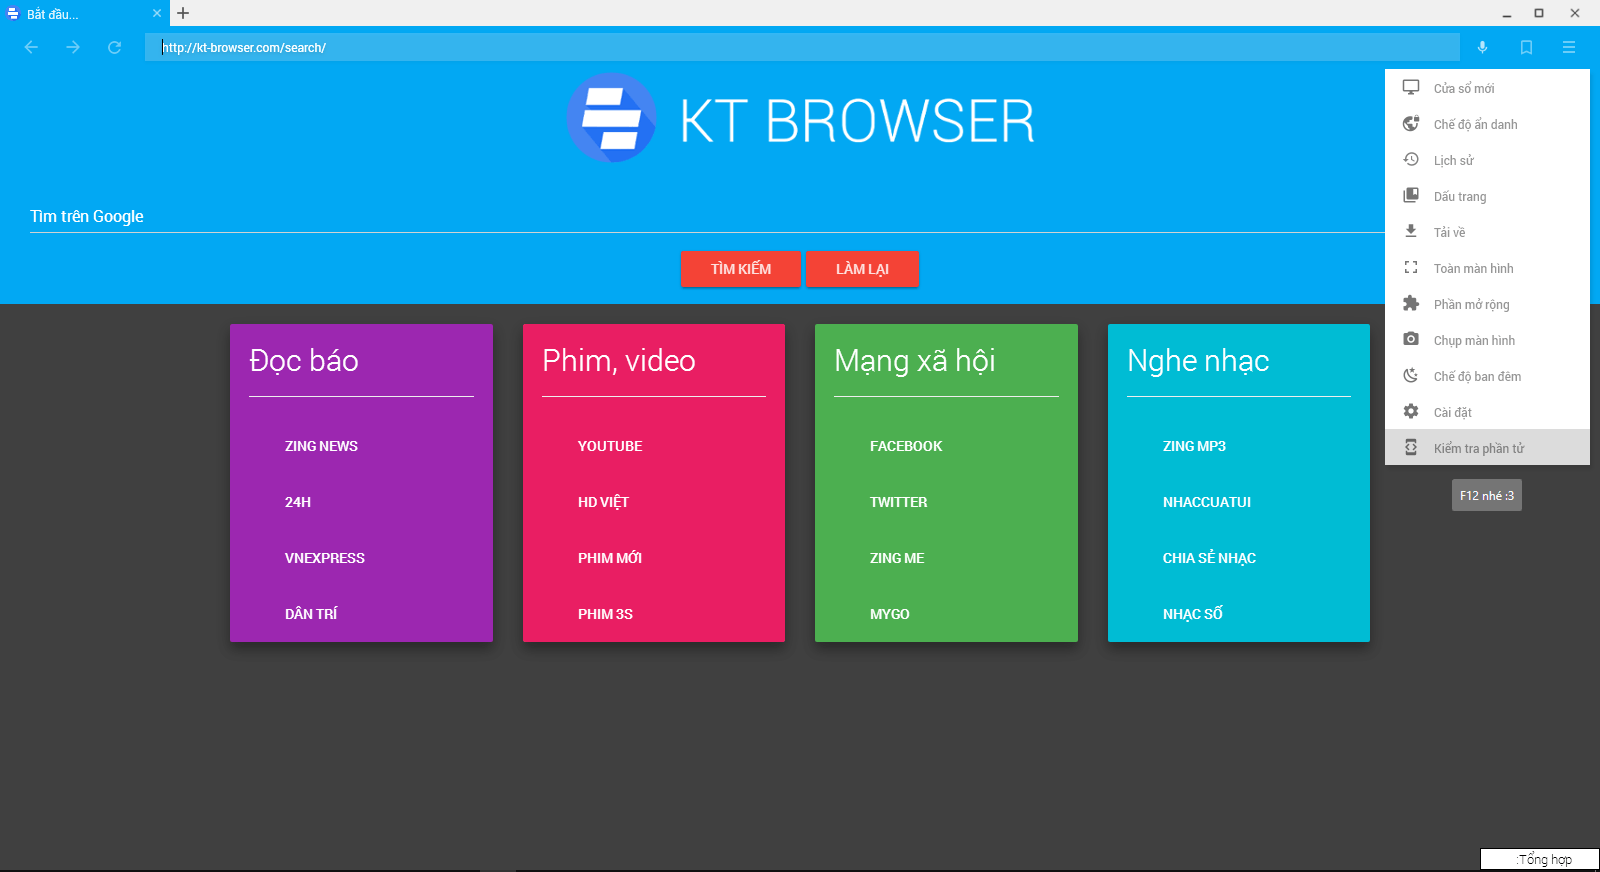 KT Browser của Nguyễn Anh Khoa đã trải qua 5 phiên bản và đang được hoàn thiện, sửa lỗi từng ngày. 